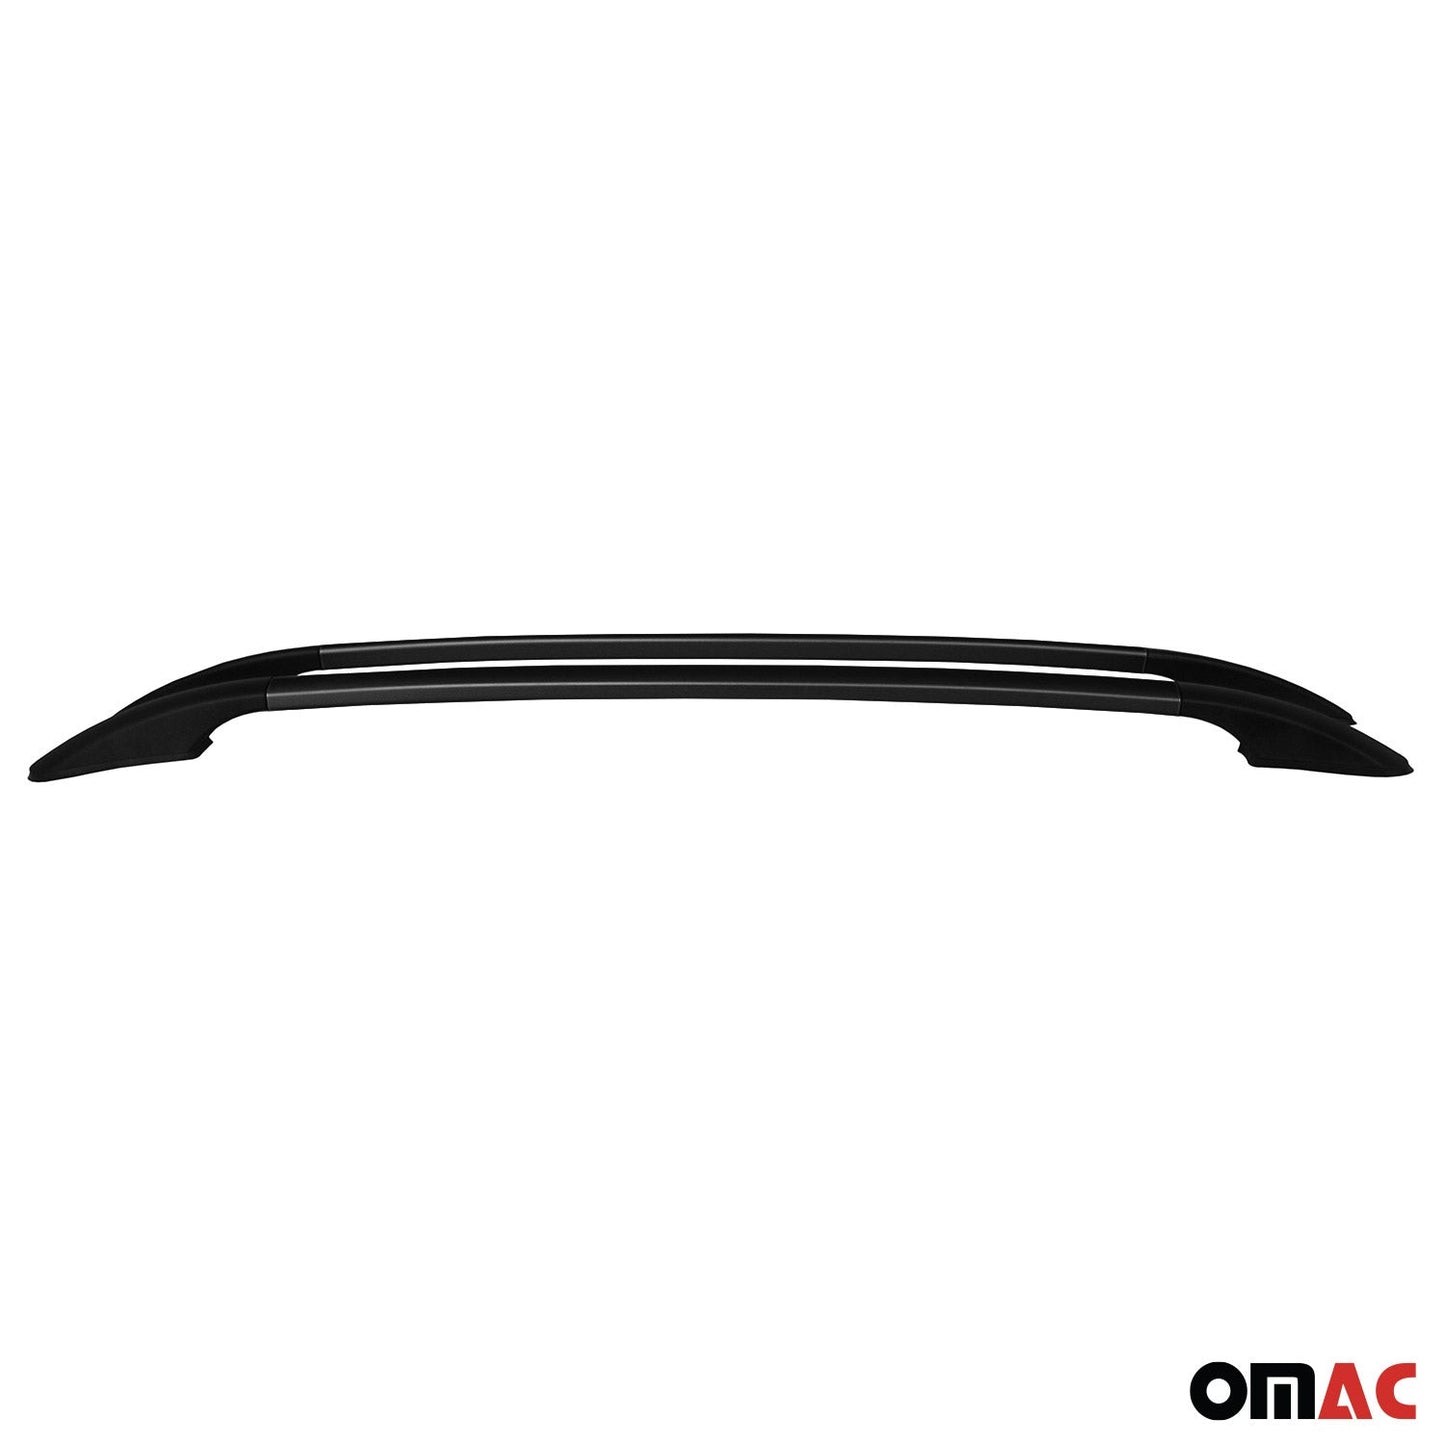 OMAC Roof Rack Side Rails Aluminium for Audi A3 Hatchback 2006-2013 Black 2 Pcs 3246934B